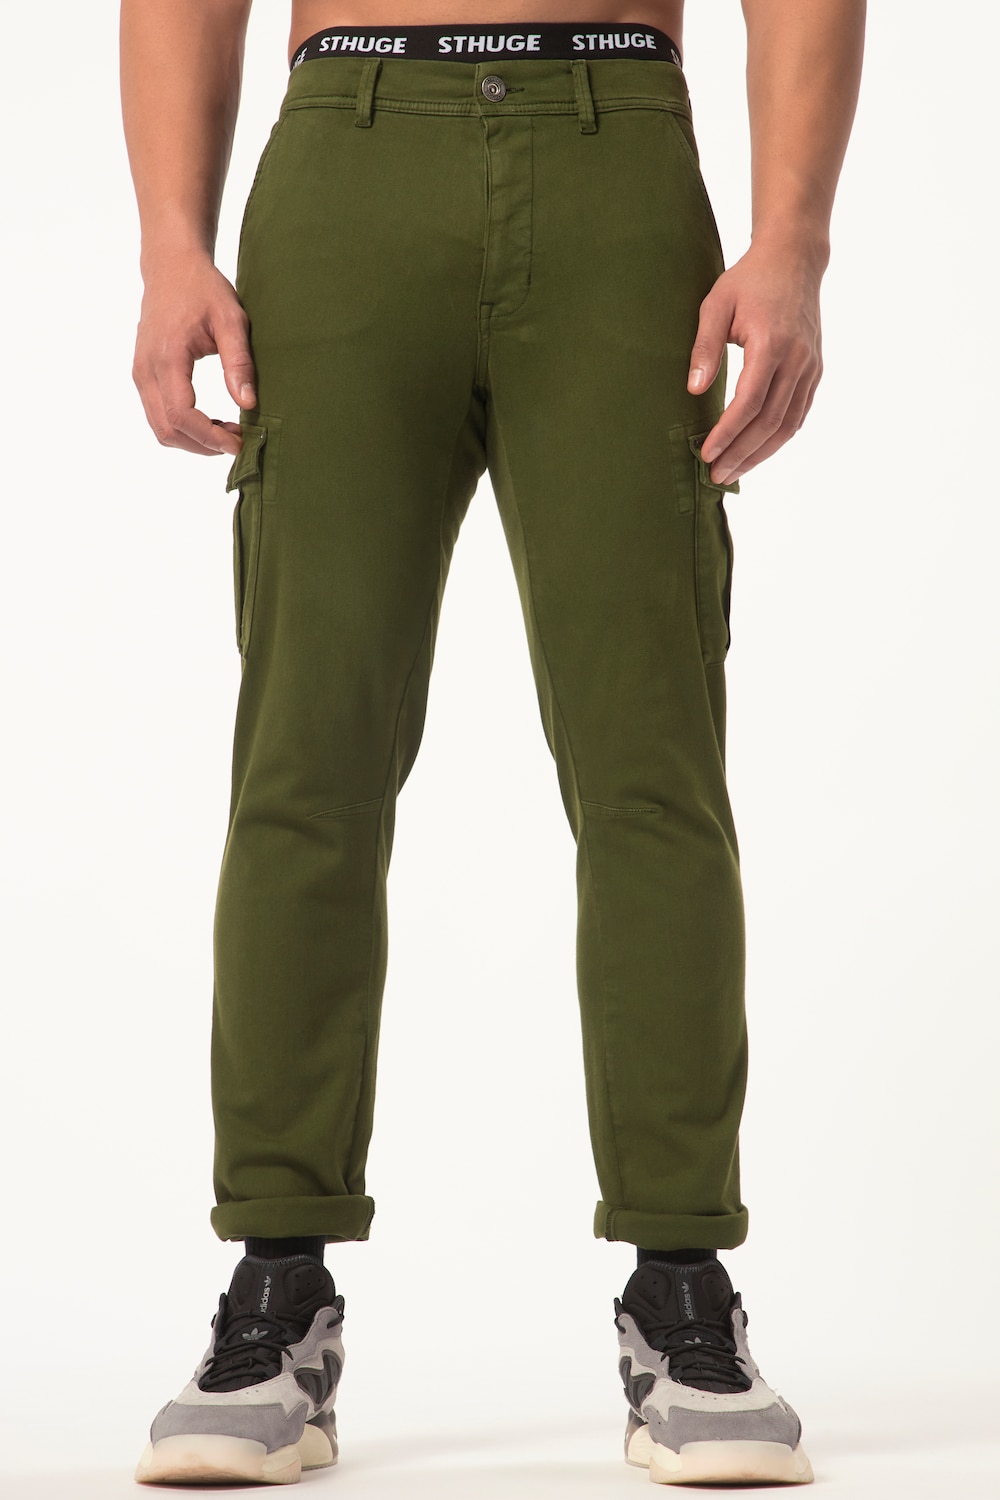 grandes tailles pantalon cargo sthuge flexlastic®, femmes, vert, taille: 52, coton, sthuge